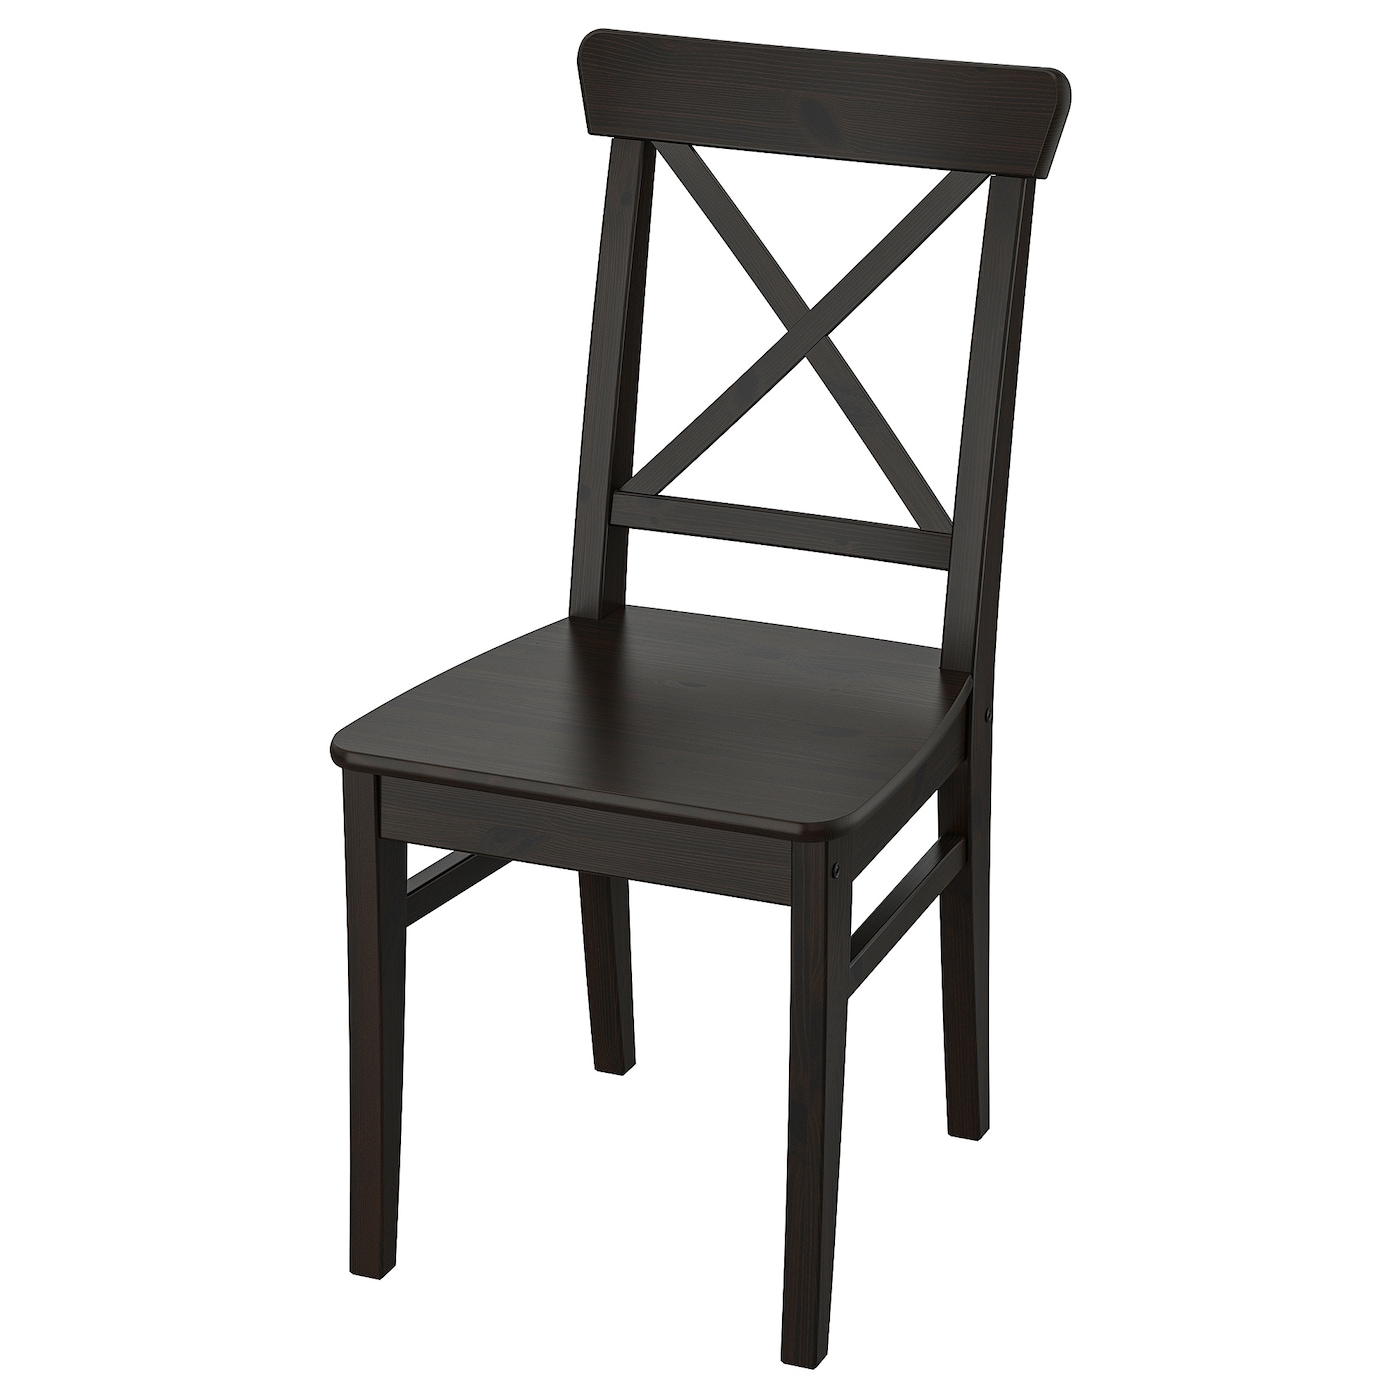 INGOLF Stuhl  - Esszimmerstühle - Möbel Ideen für dein Zuhause von Home Trends. Möbel Trends von Social Media Influencer für dein Skandi Zuhause.